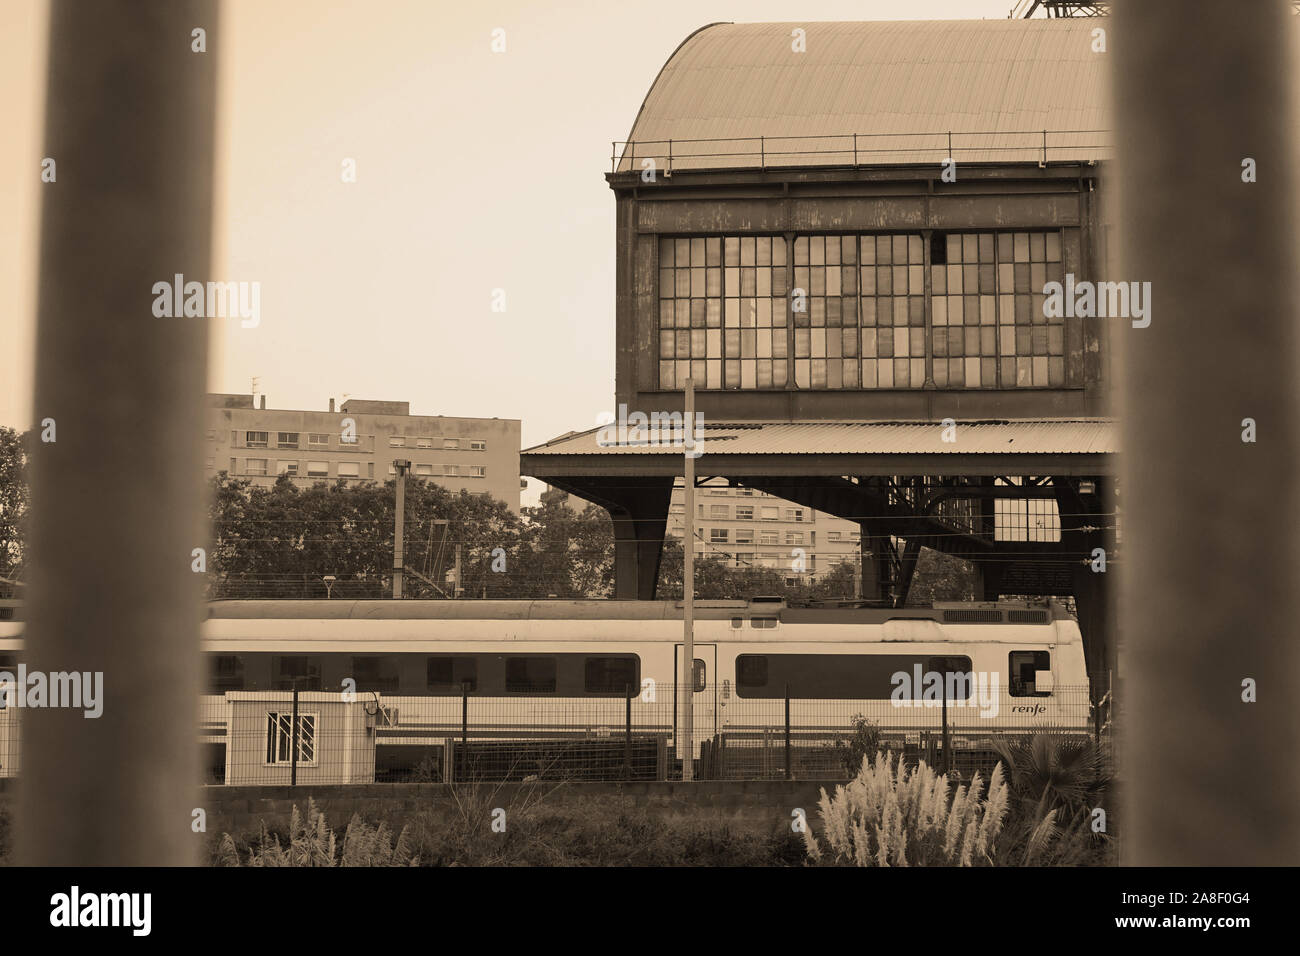 Une vue sur la ville de bâtiment délabré avec un train en direction de passé Banque D'Images